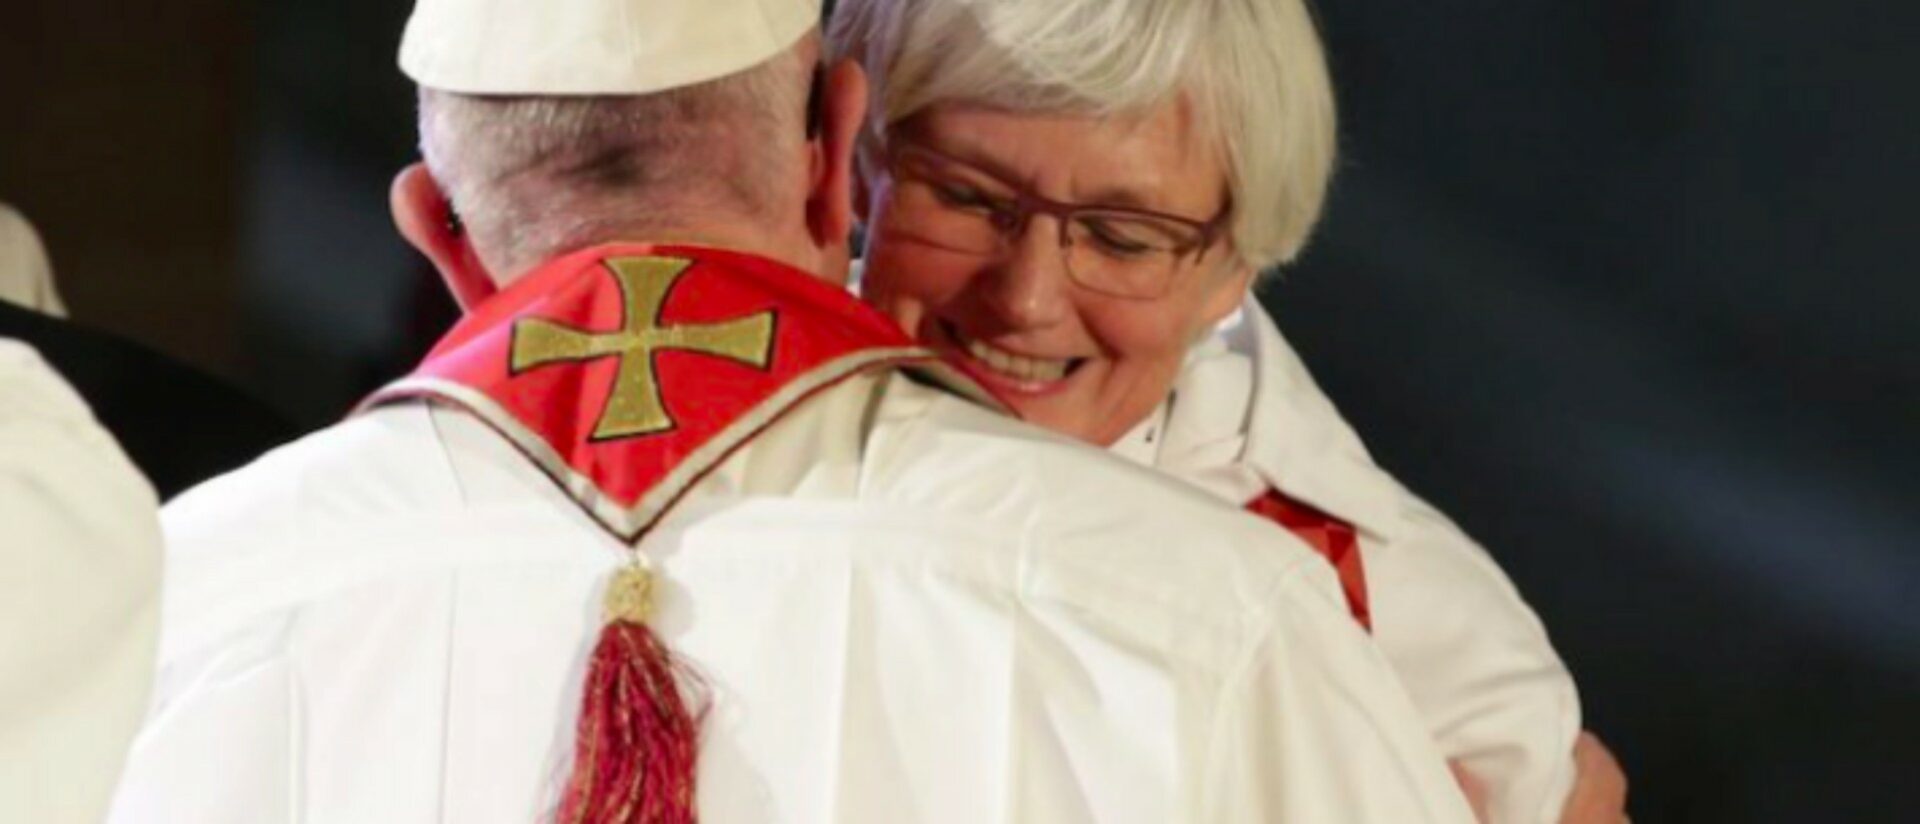 L'archevêque d'Uppsala Antje Jackelén saluée par le pape François | capture d'écran